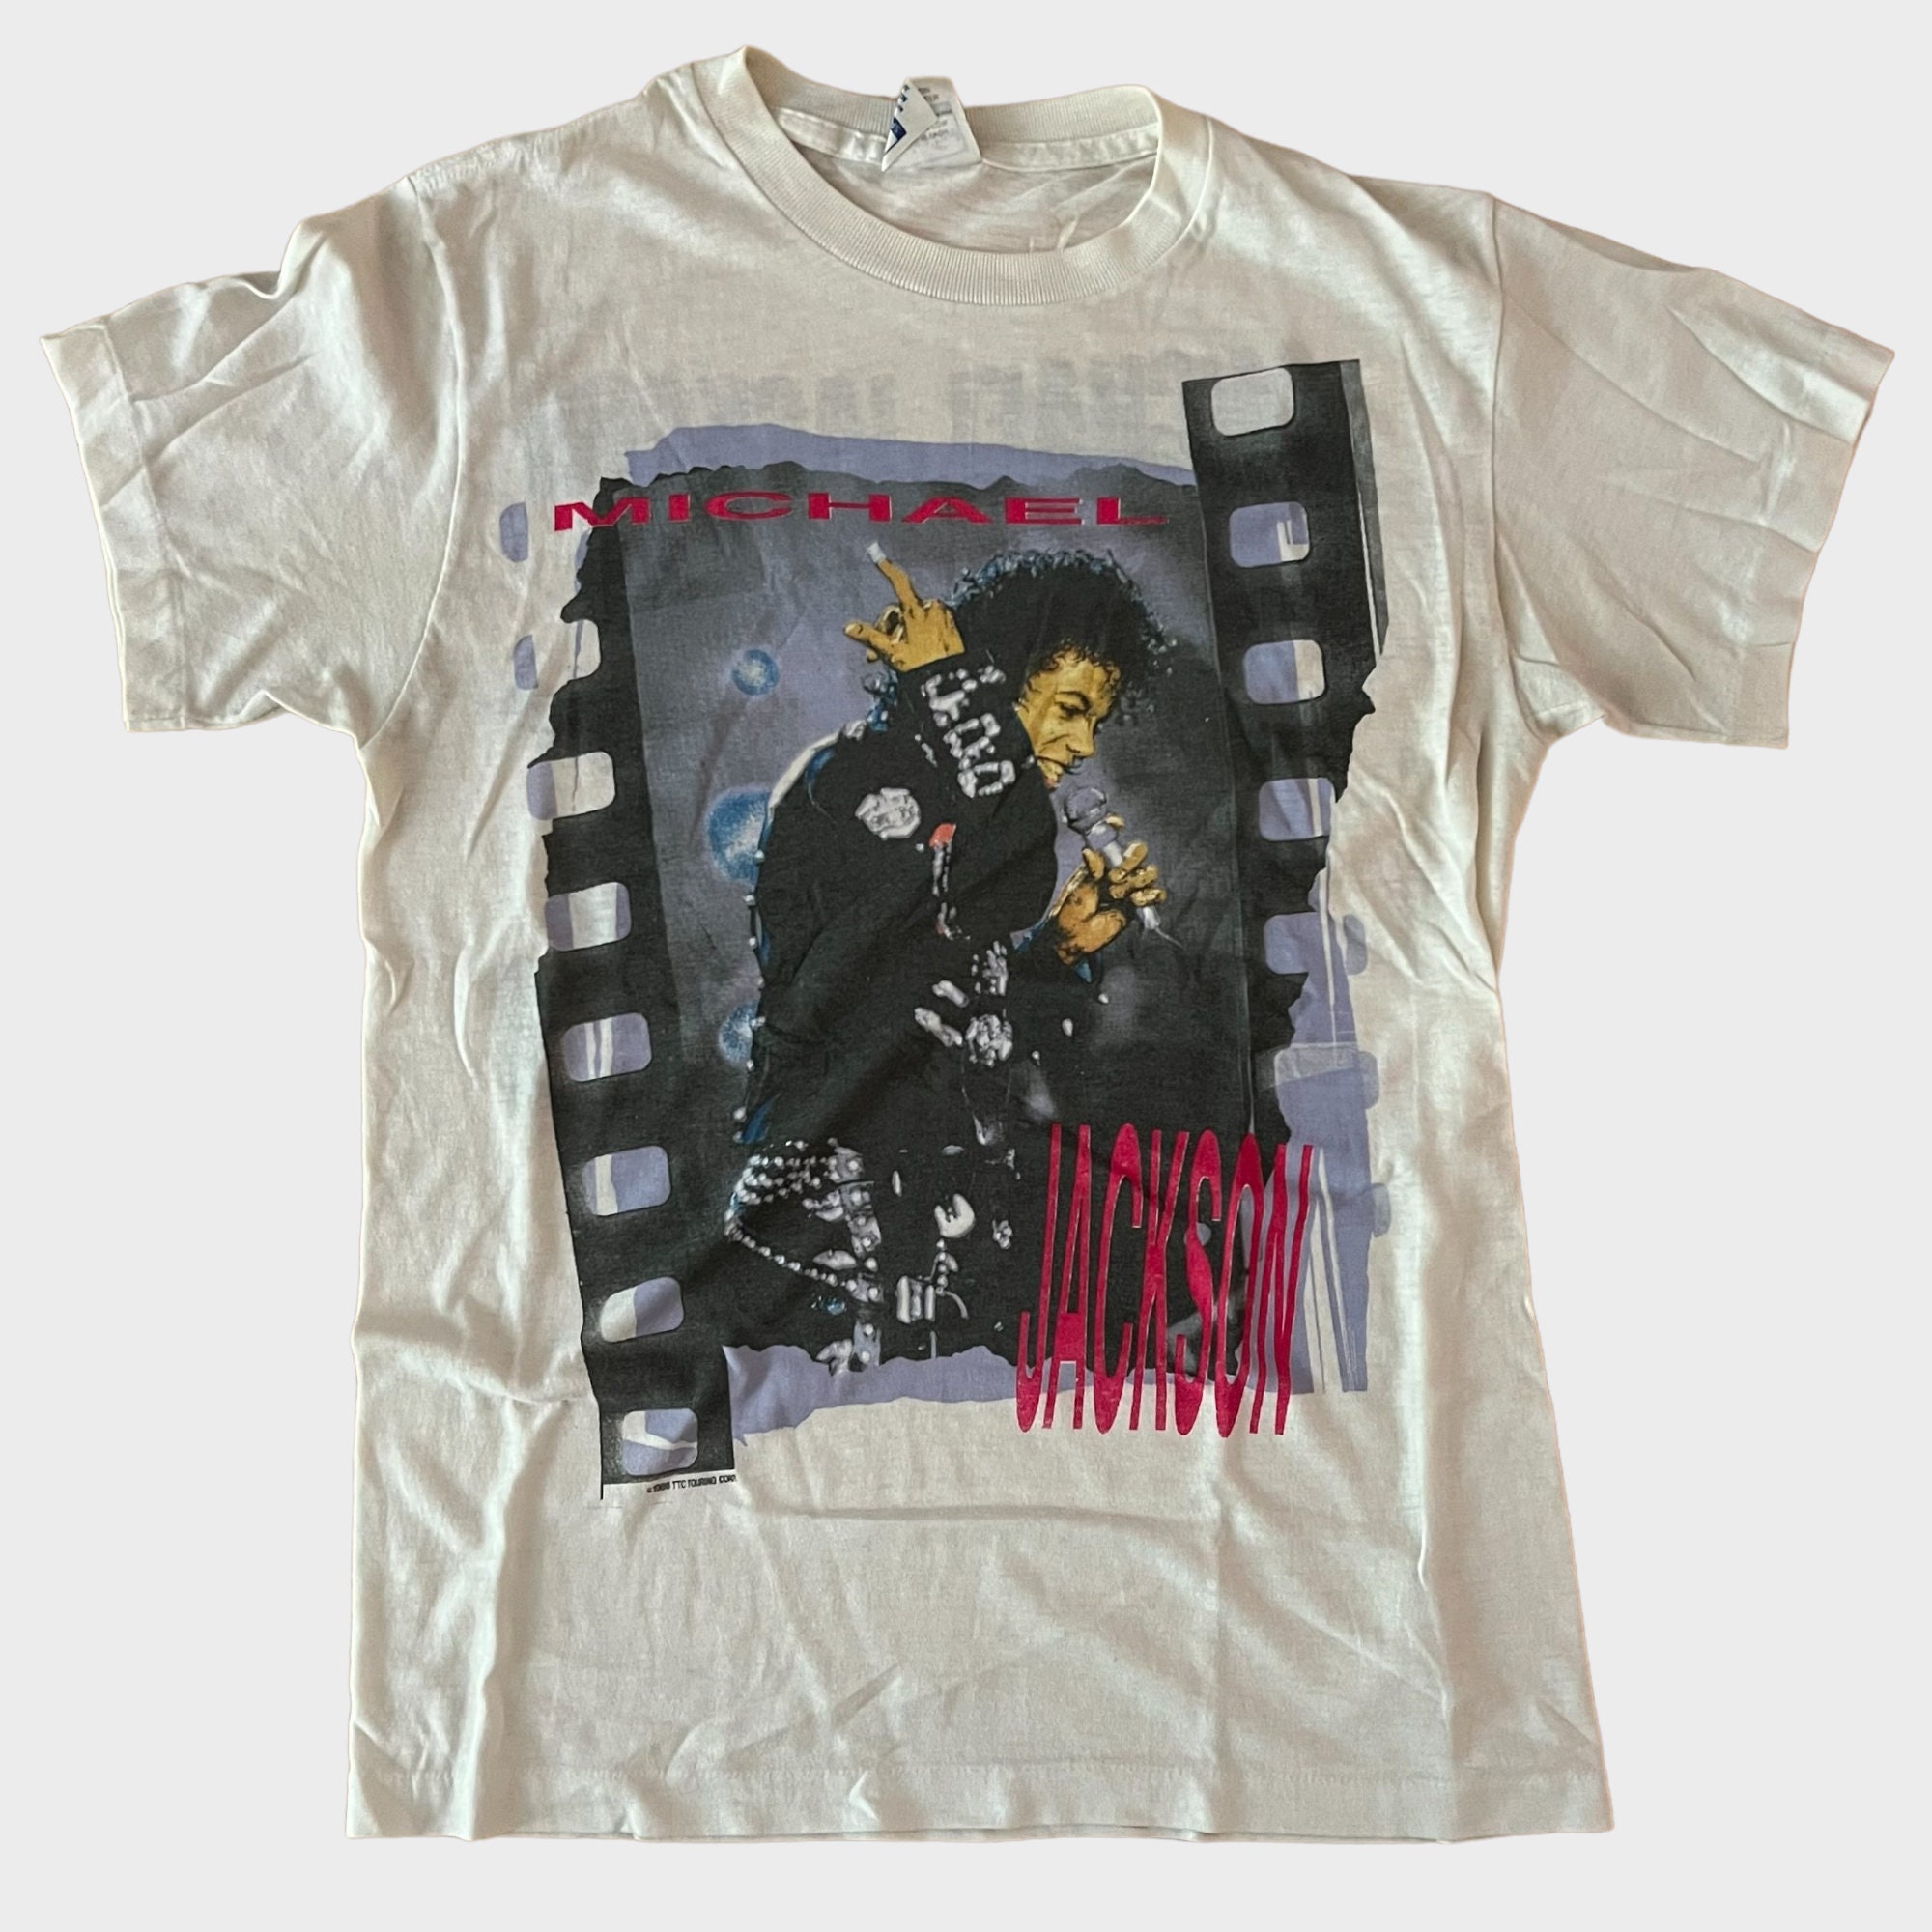 Michael Jackson Vintage Bad World Tour Tee Shirt